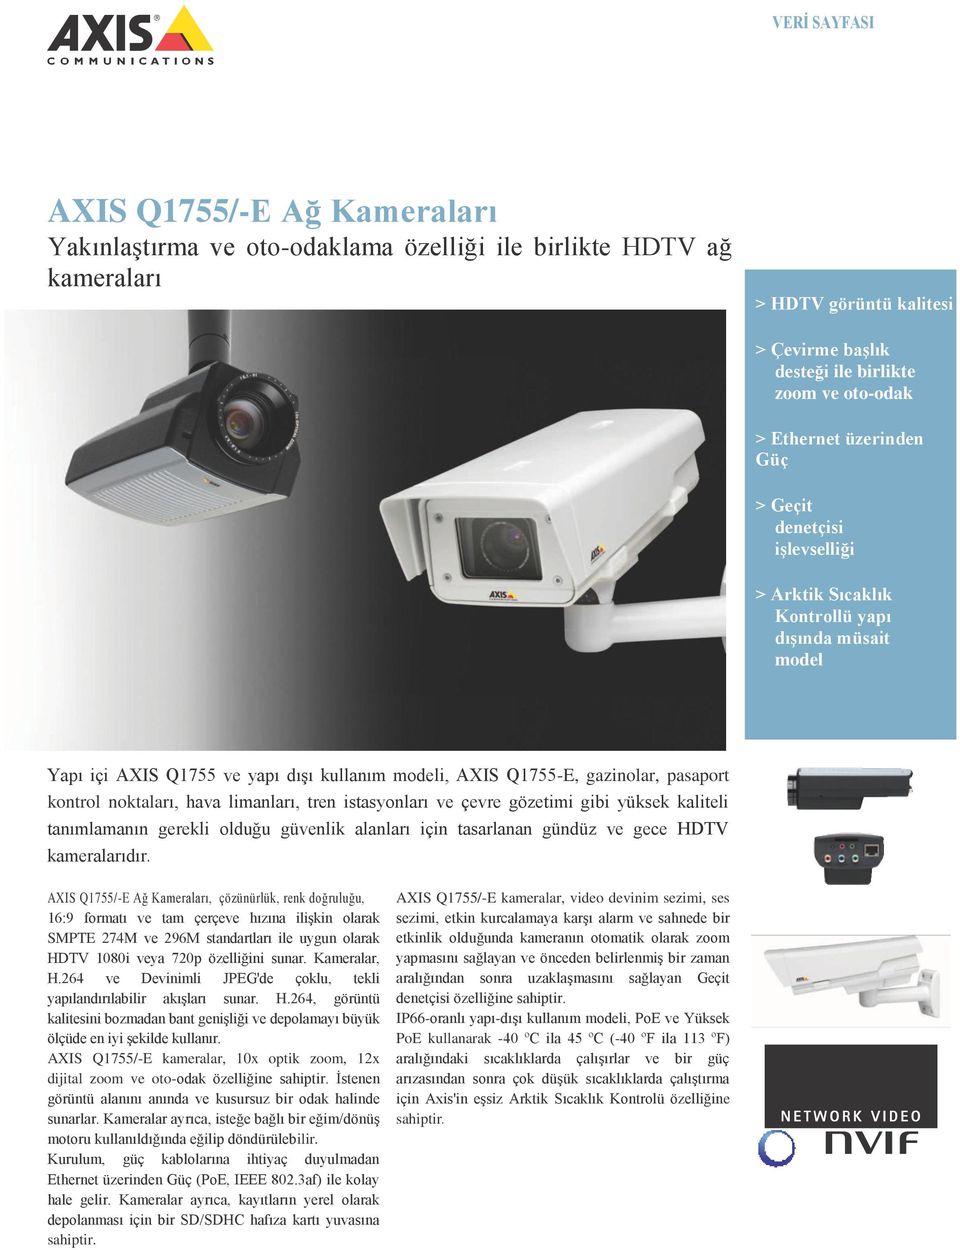 noktaları, hava limanları, tren istasyonları ve çevre gözetimi gibi yüksek kaliteli tanımlamanın gerekli olduğu güvenlik alanları için tasarlanan gündüz ve gece HDTV kameralarıdır.